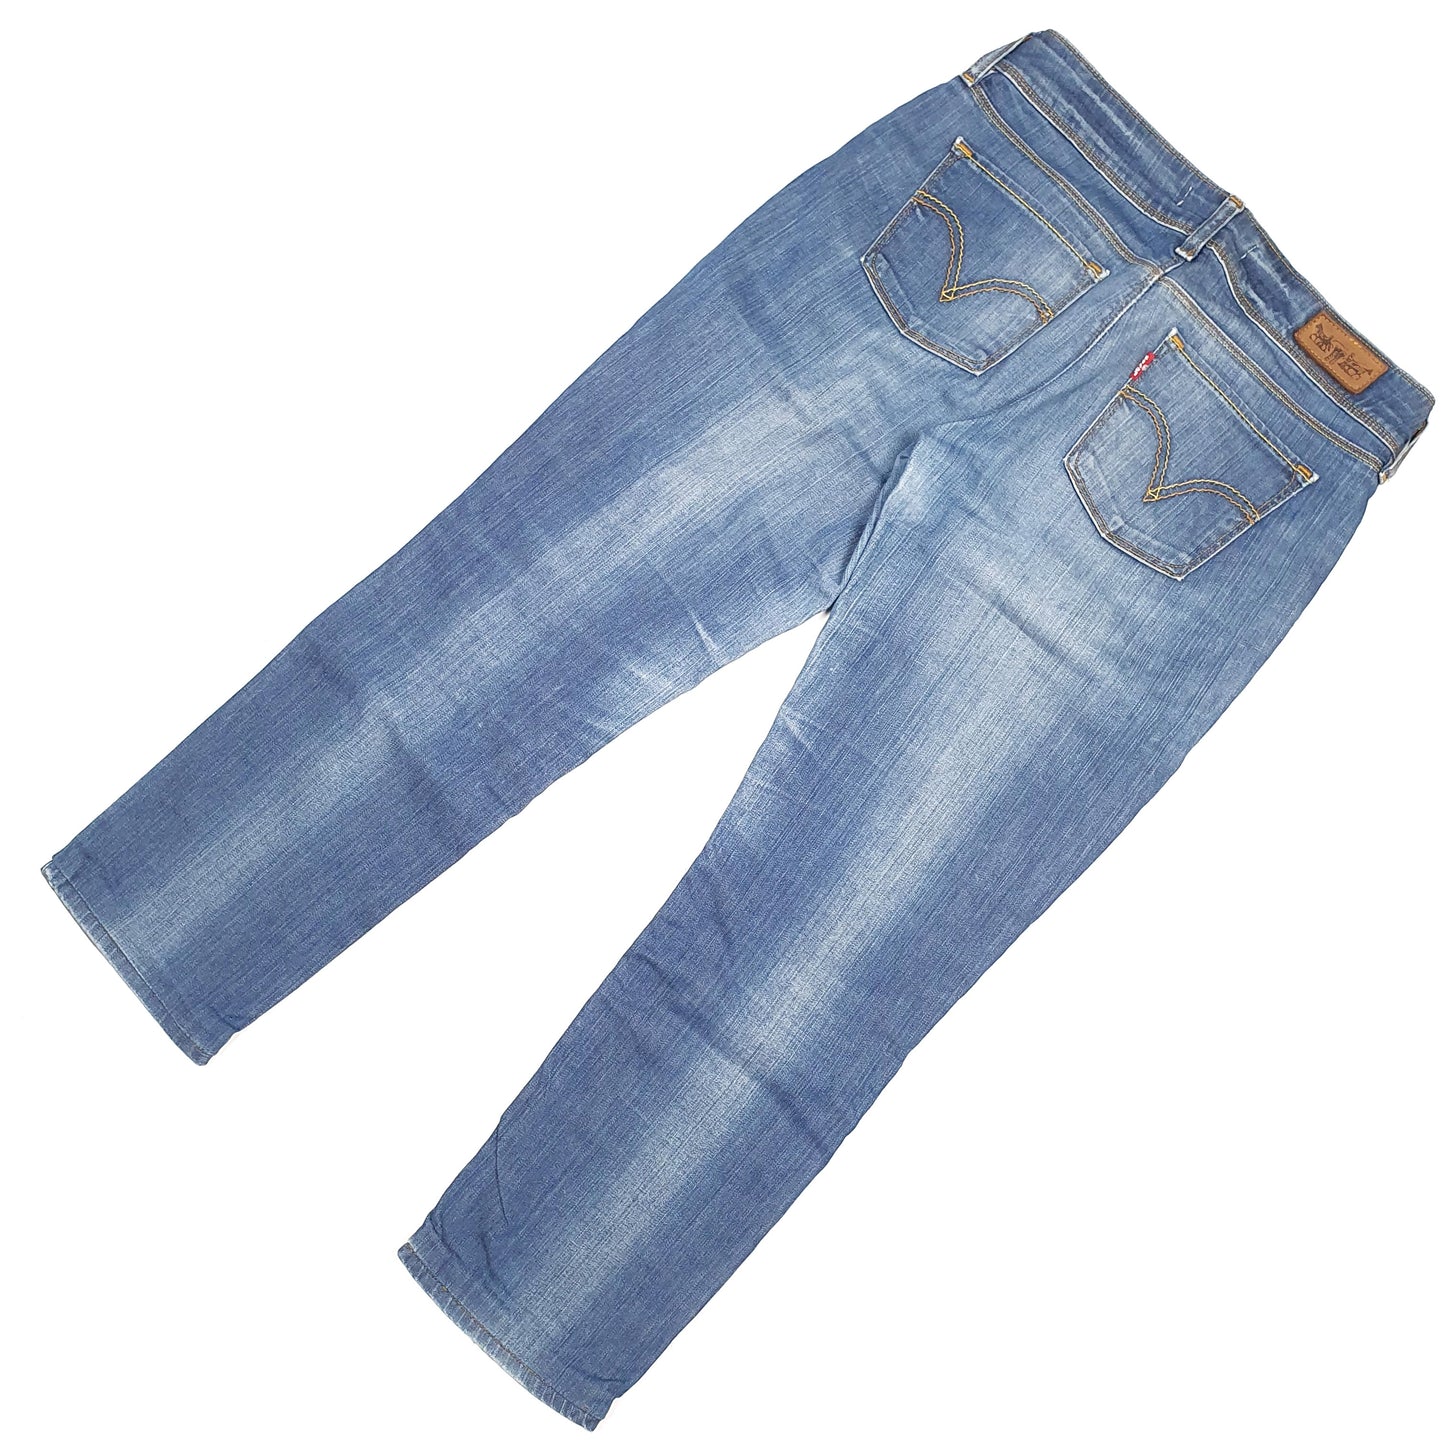 Levis 571 Slim Fit Jeans UK14